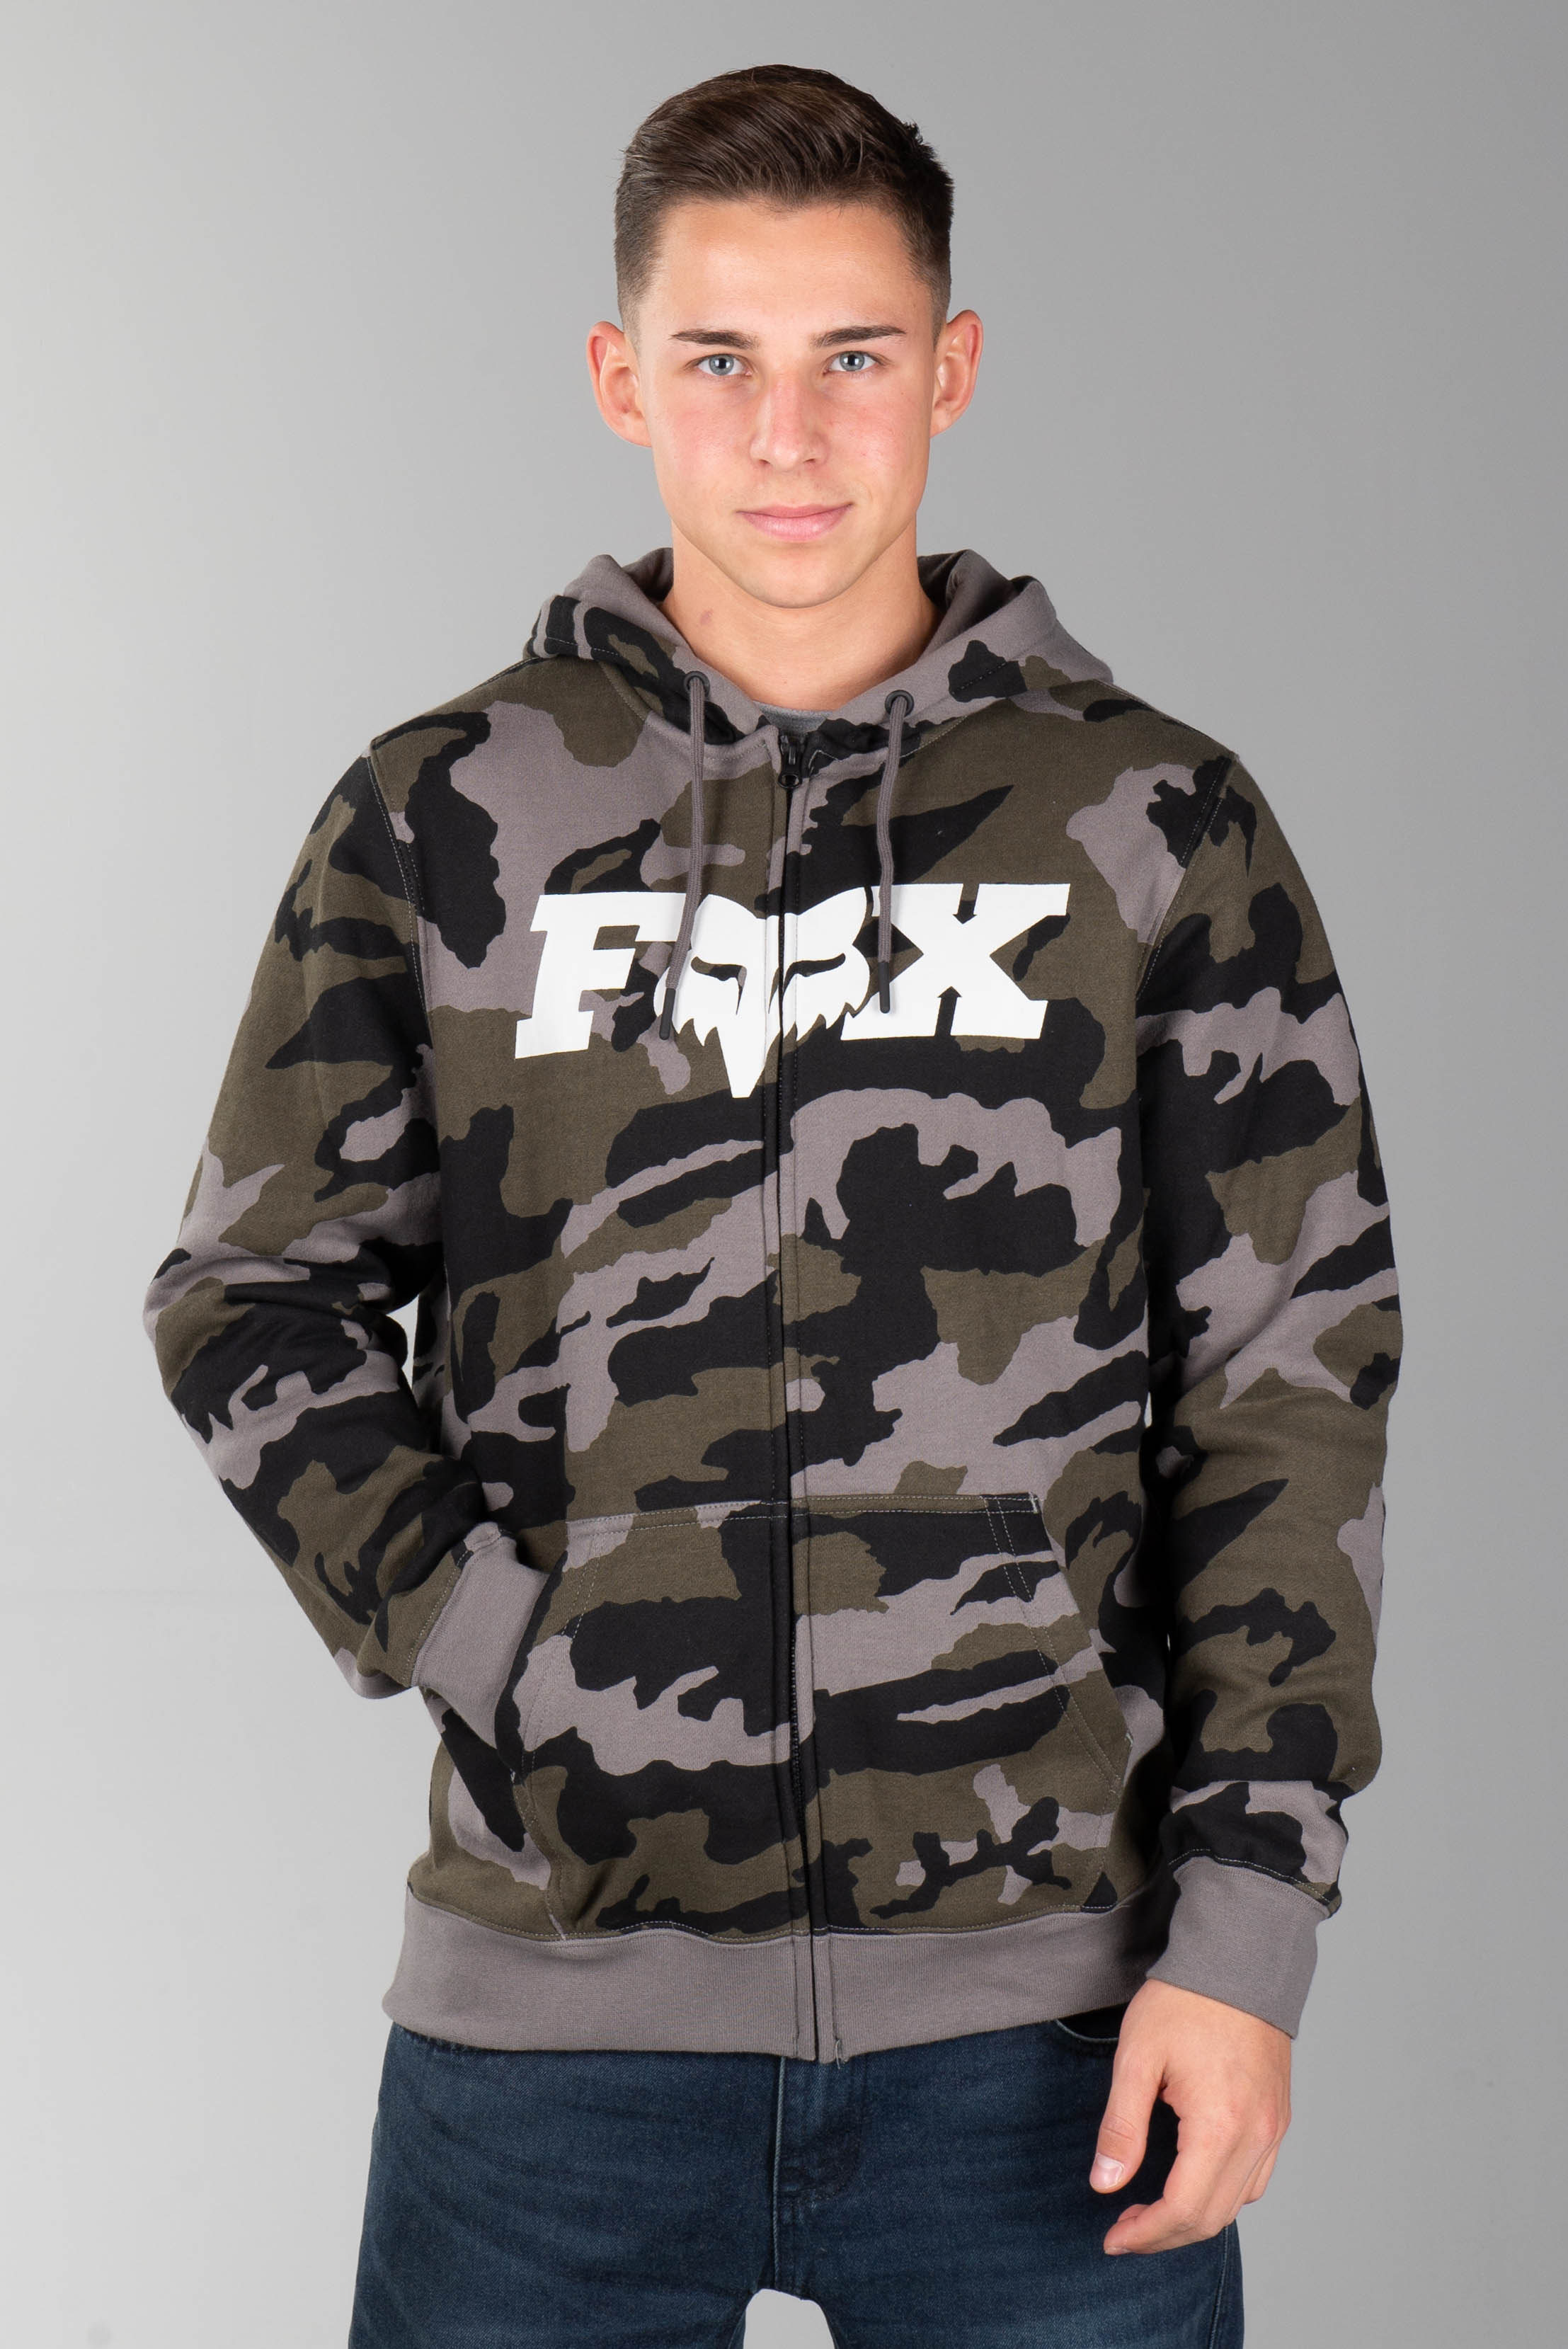 fox legacy hoodie